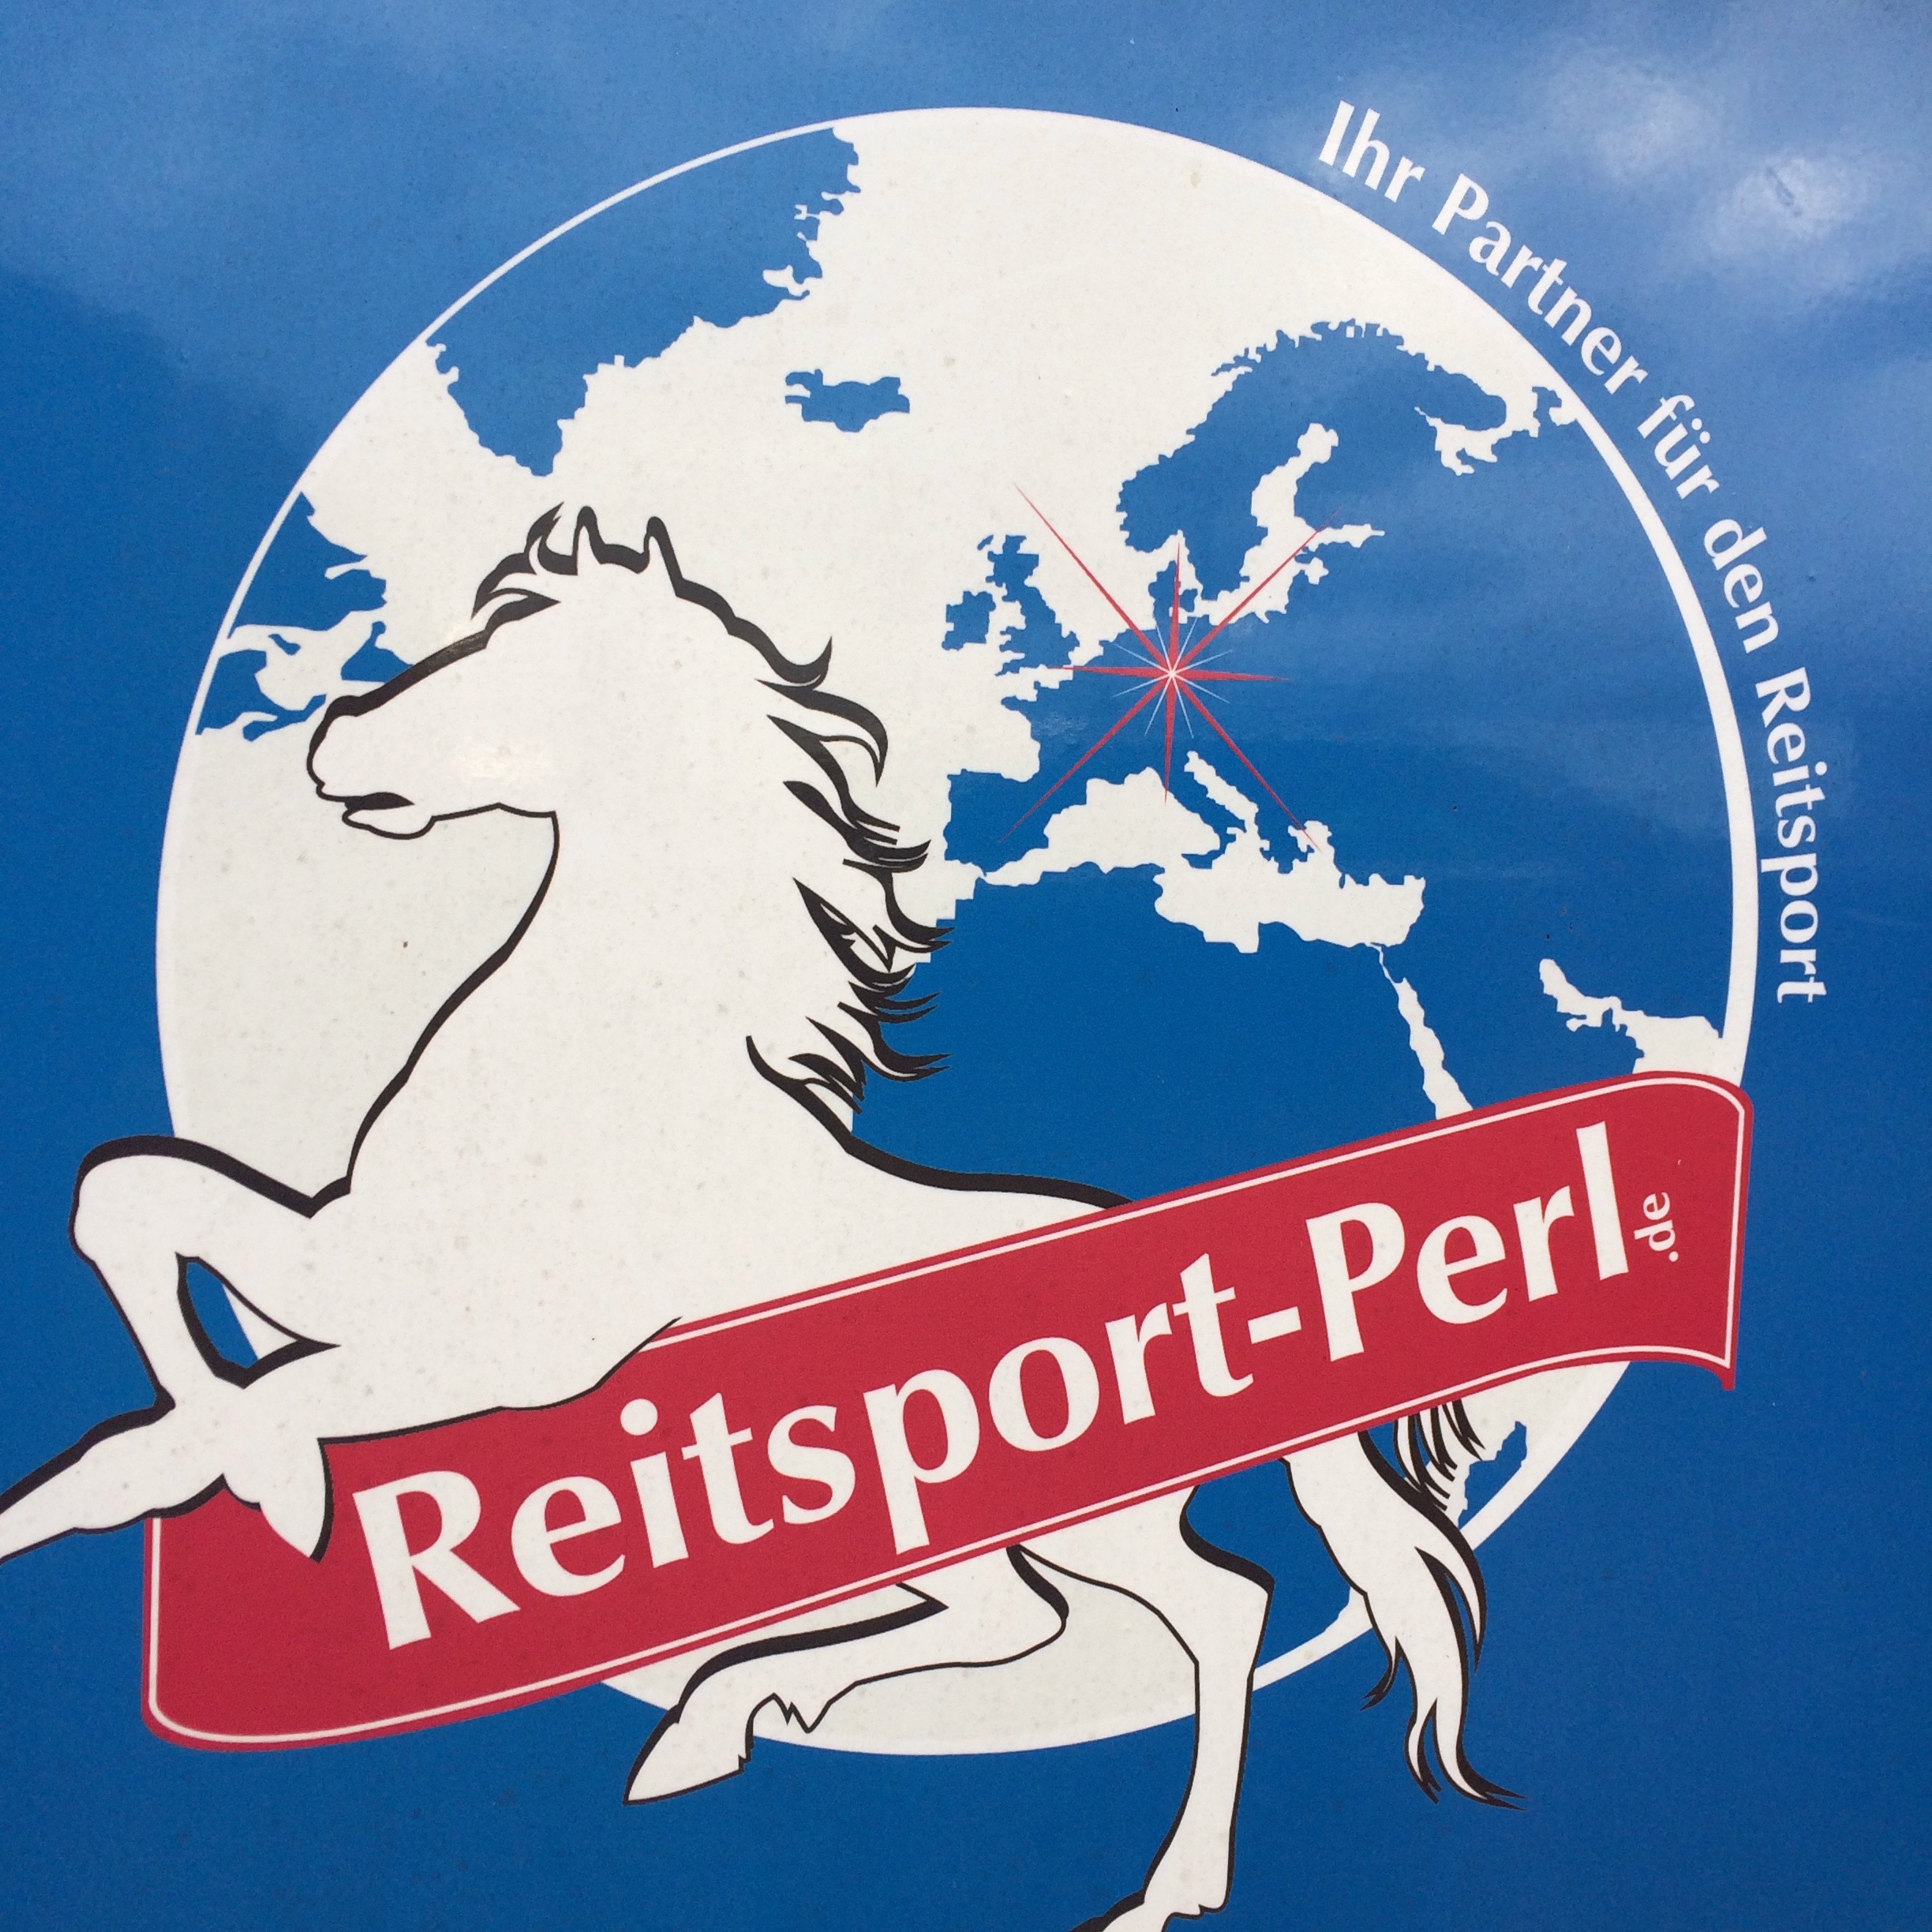 (c) Reitsport-perl.de